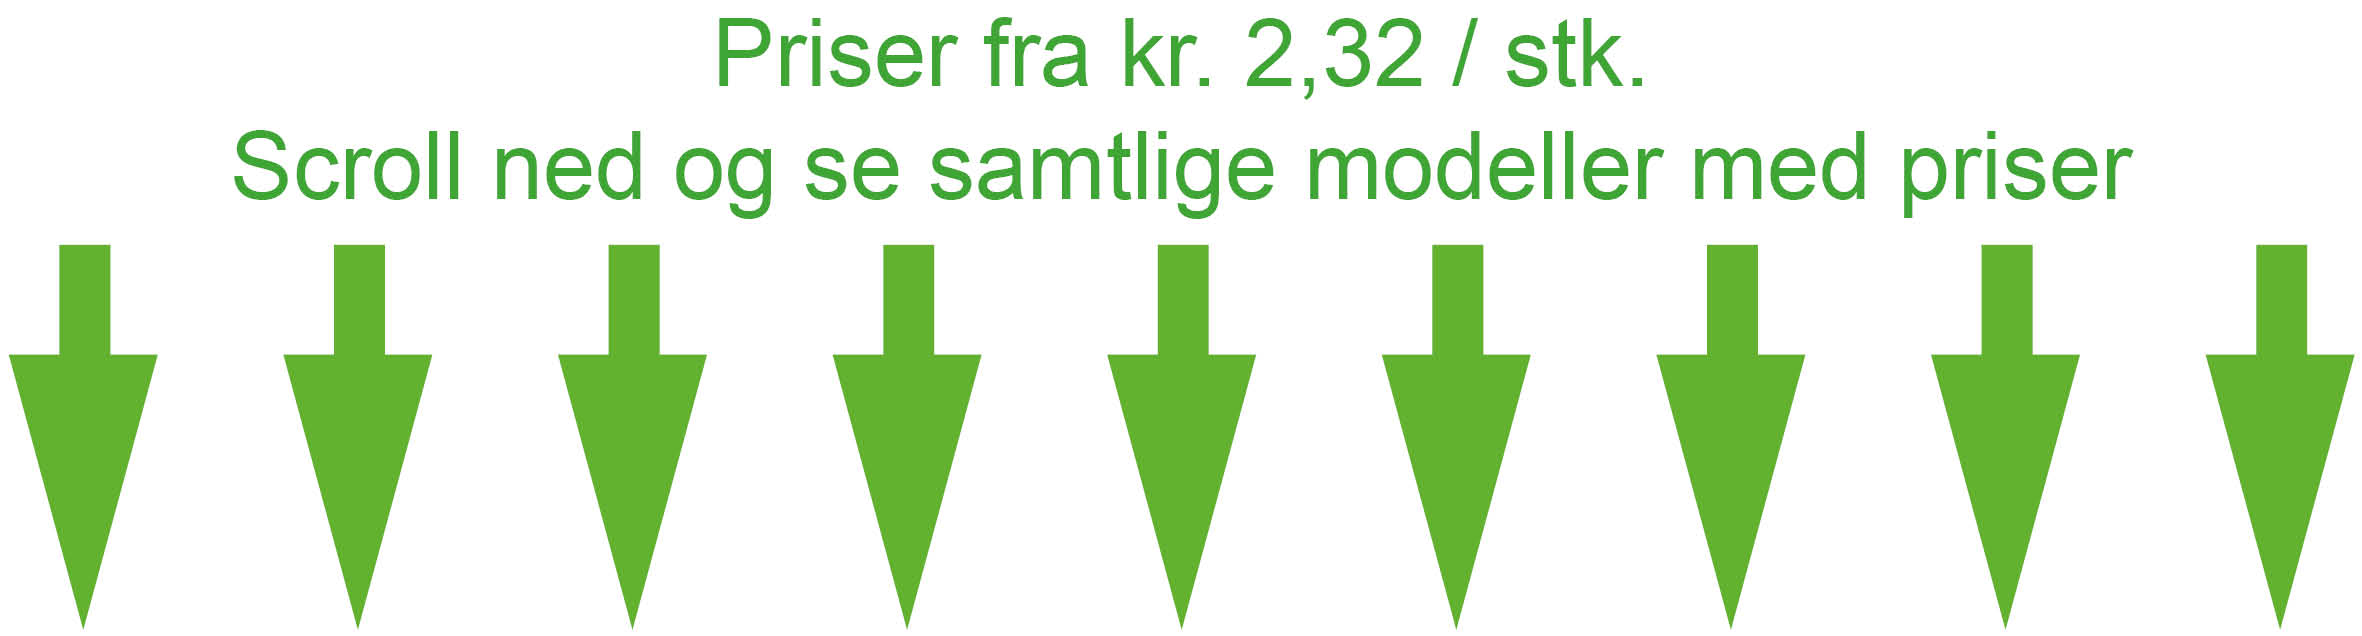 Se alle priser og modeller på keyhangere, KortTrykkeriet.dk